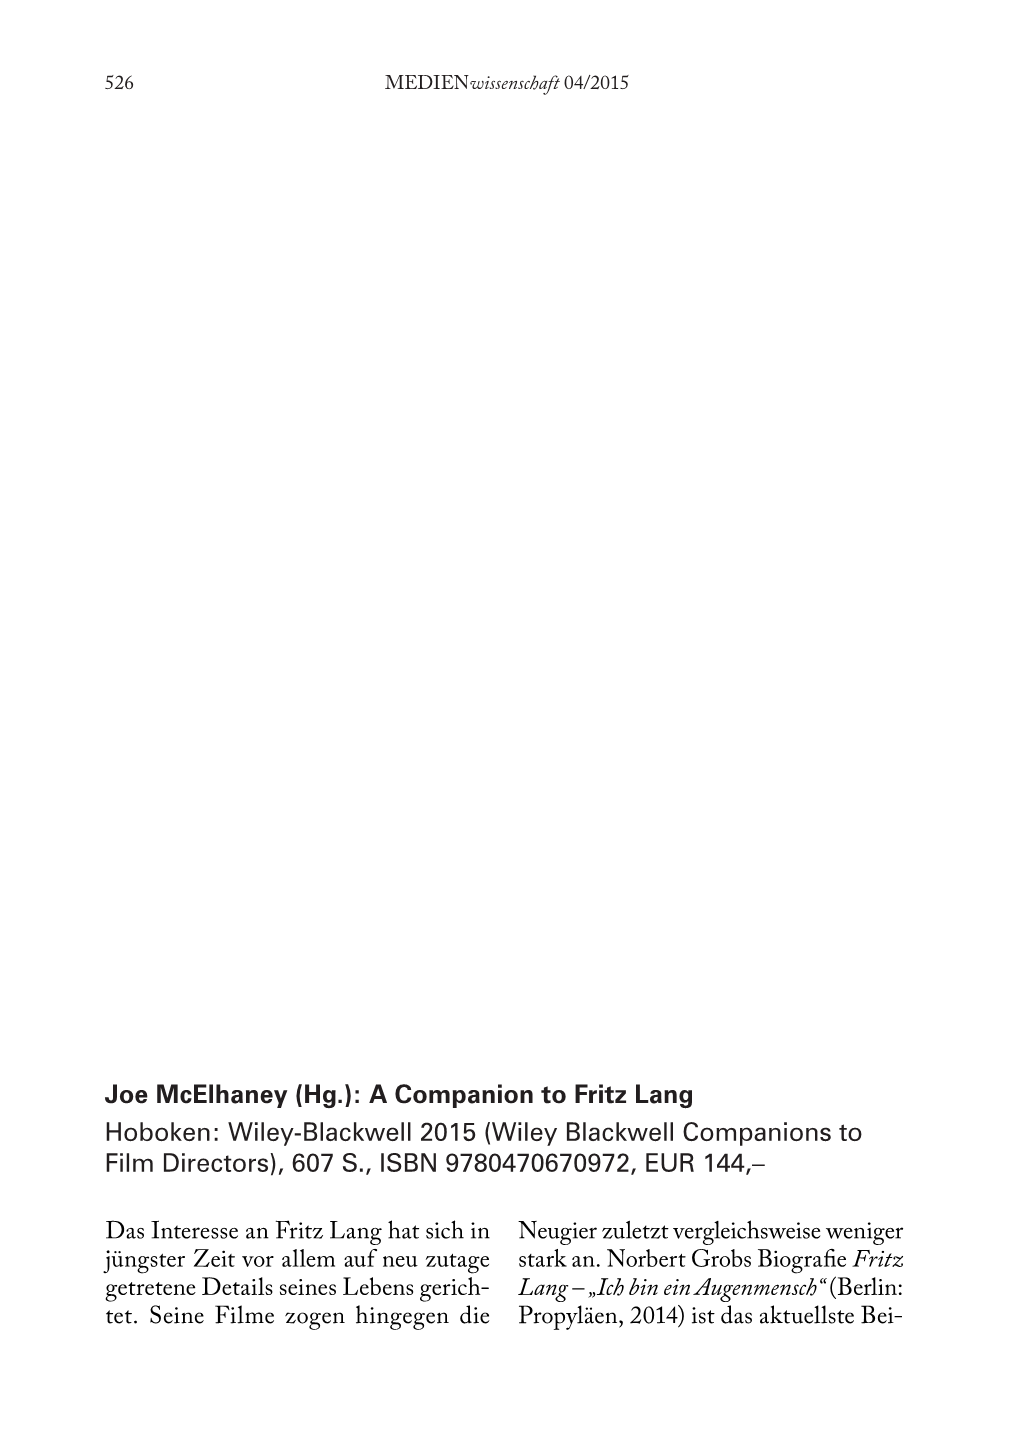 A Companion to Fritz Lang Hoboken: Wiley-Blackwell 2015 (Wiley Blackwell Companions to Film Directors), 607 S., ISBN 9780470670972, EUR 144,–